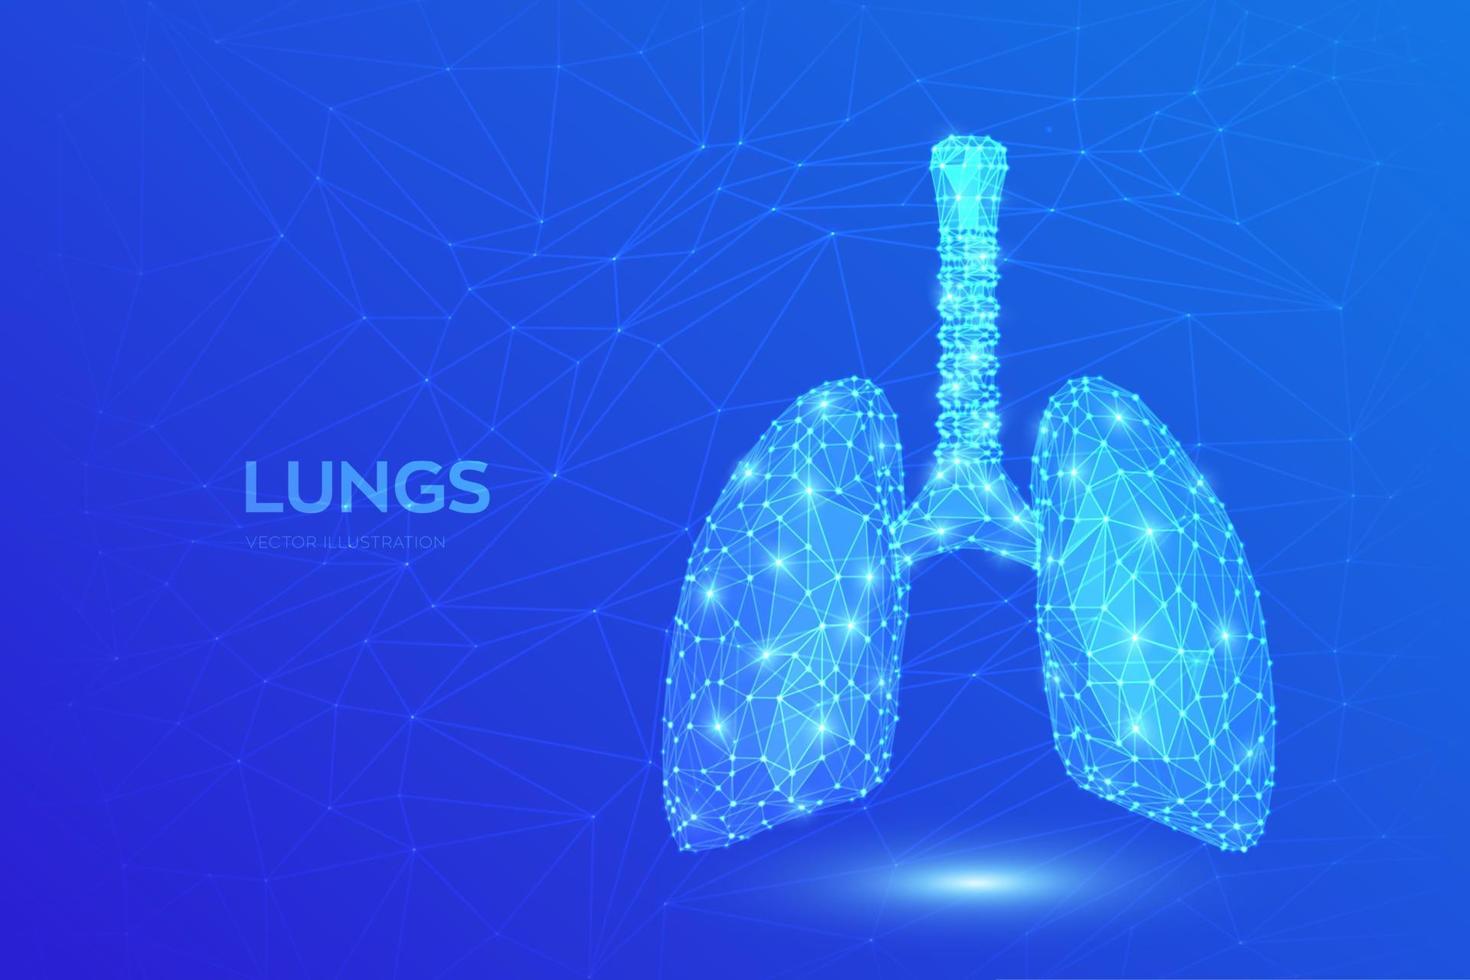 pulmões. anatomia dos pulmões do sistema respiratório humano poligonal baixo. tratamento de doenças pulmonares. remédio cura tuberculose, pneumonia, asma. conceito médico abstrato de cuidados de saúde. ilustração vetorial. vetor